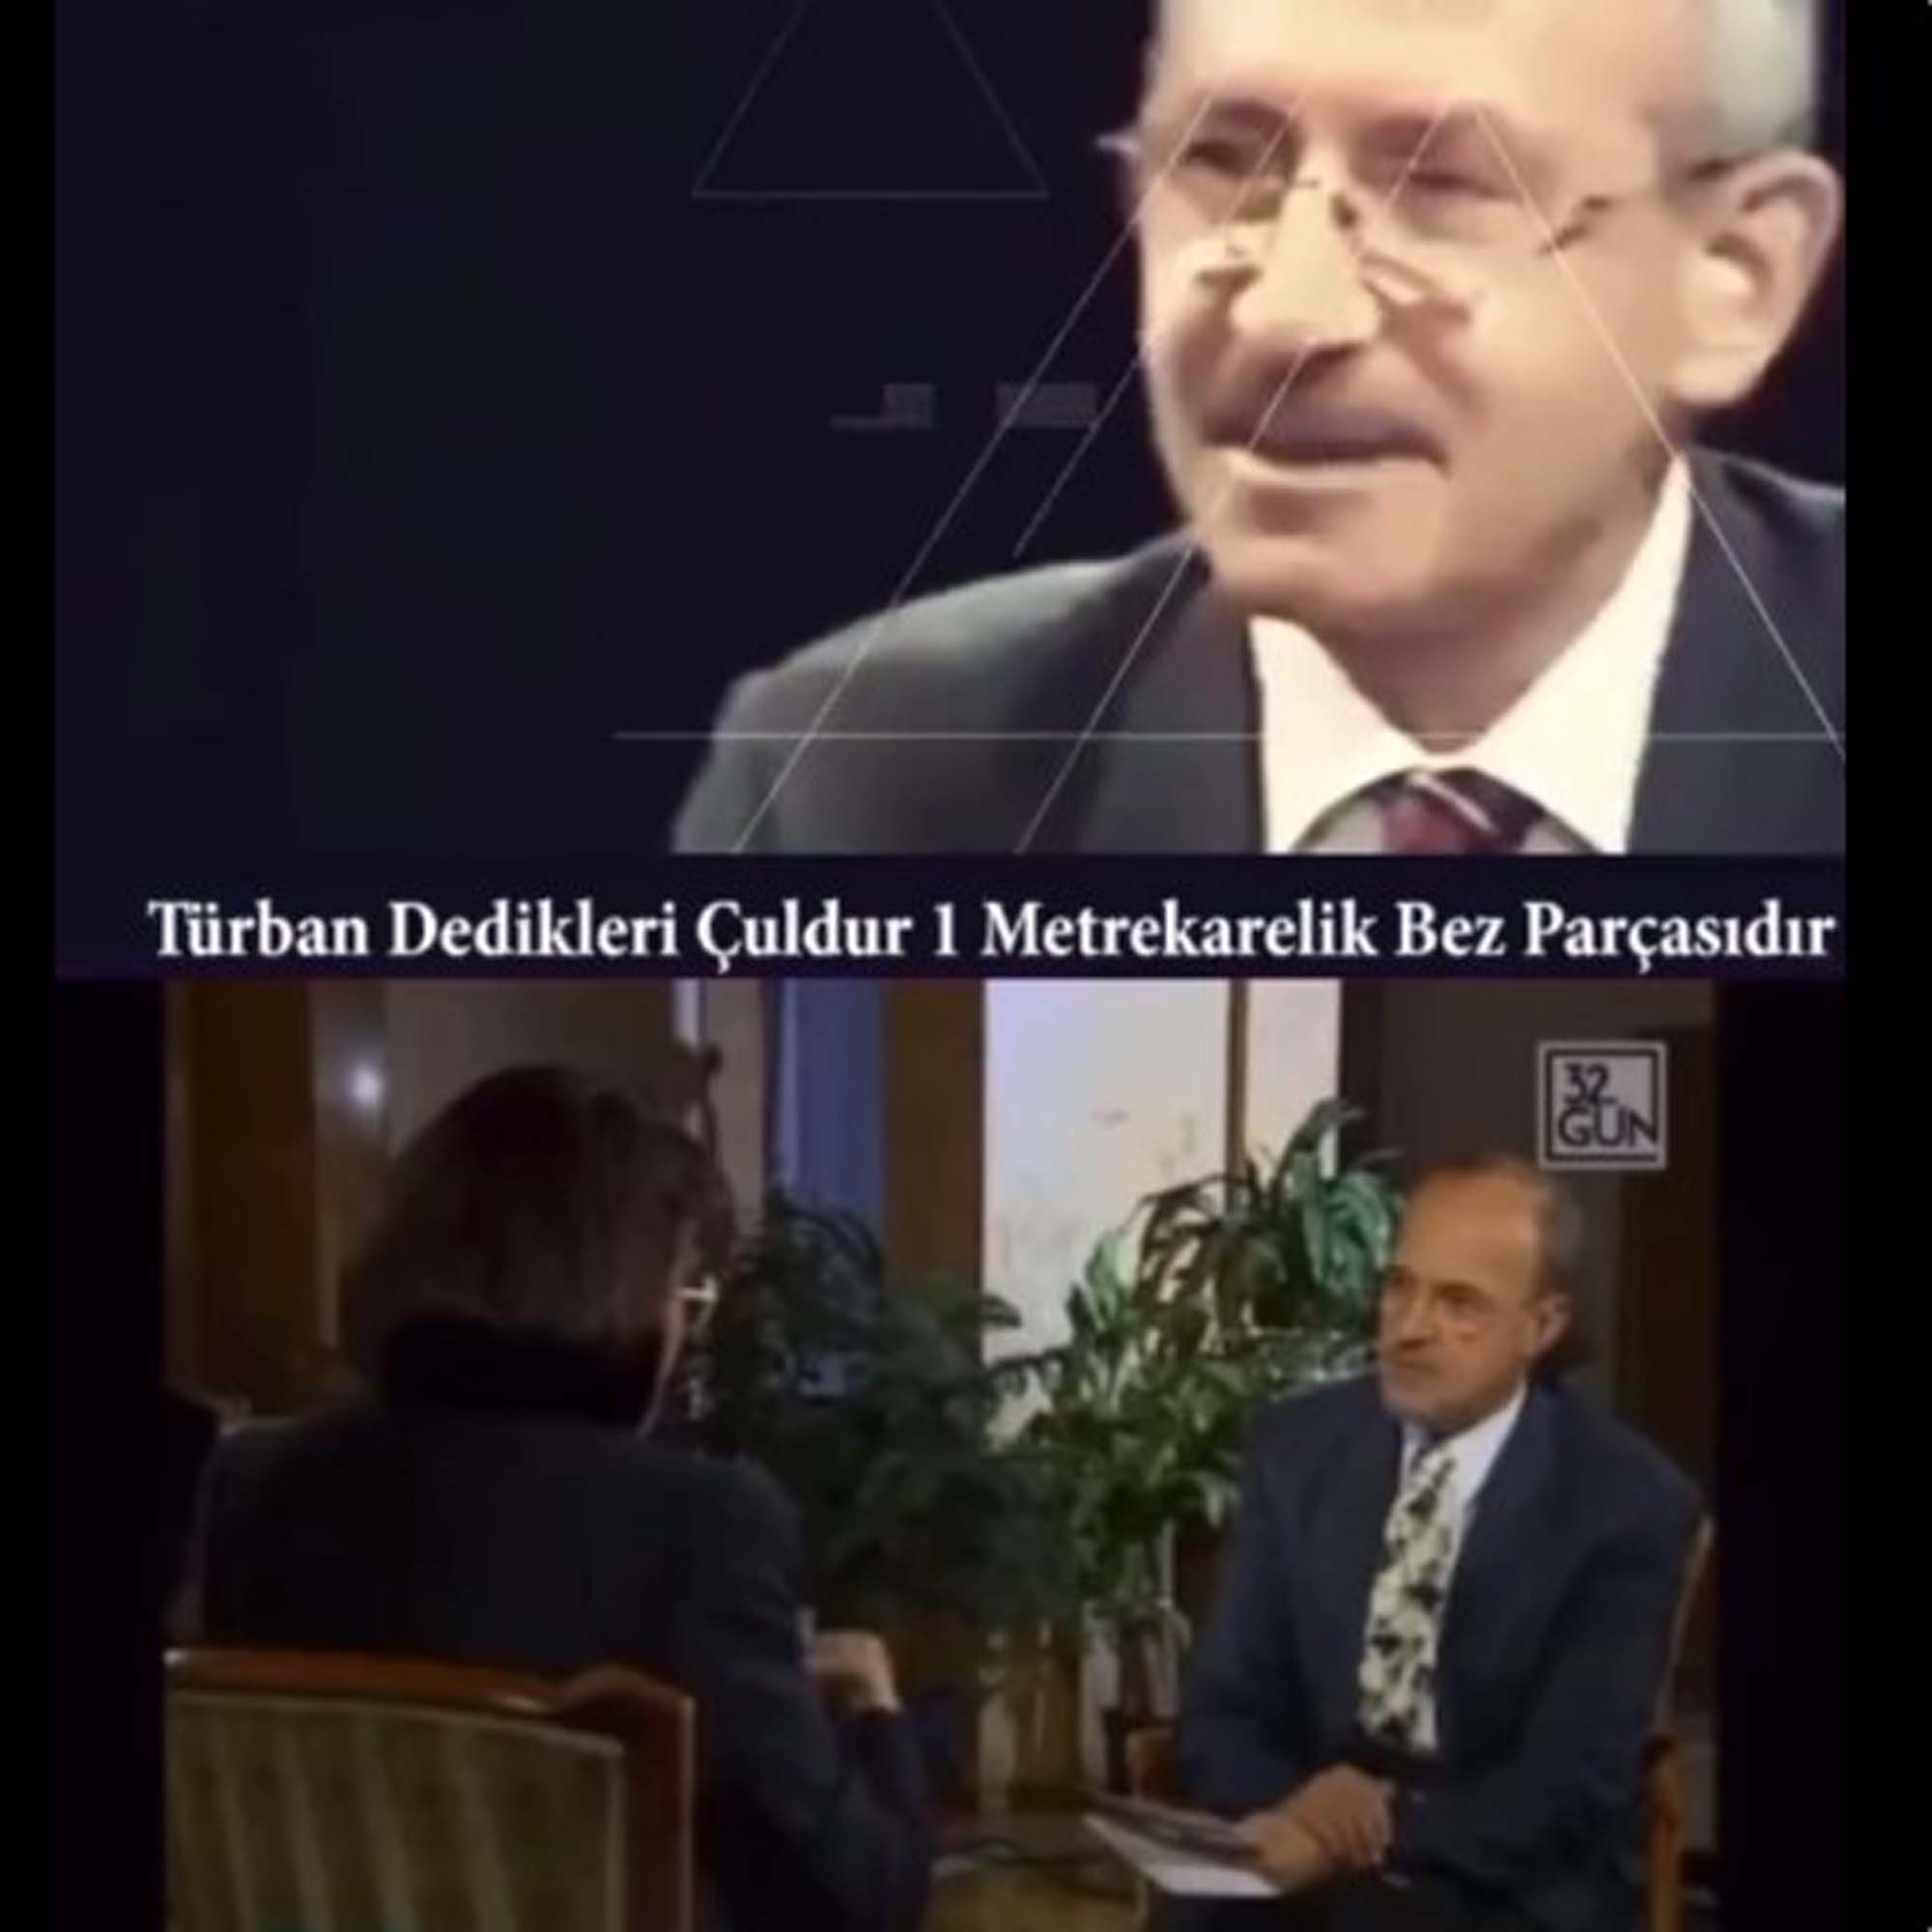 Helallik istedi, hızını alamadı Erbakan yol göstericidir dedi! Kemal Kılıçdaroğlu'nun başörtüsüne nefret kustuğu görüntüler gün yüzüne çıktı! Utanmıyor musun?